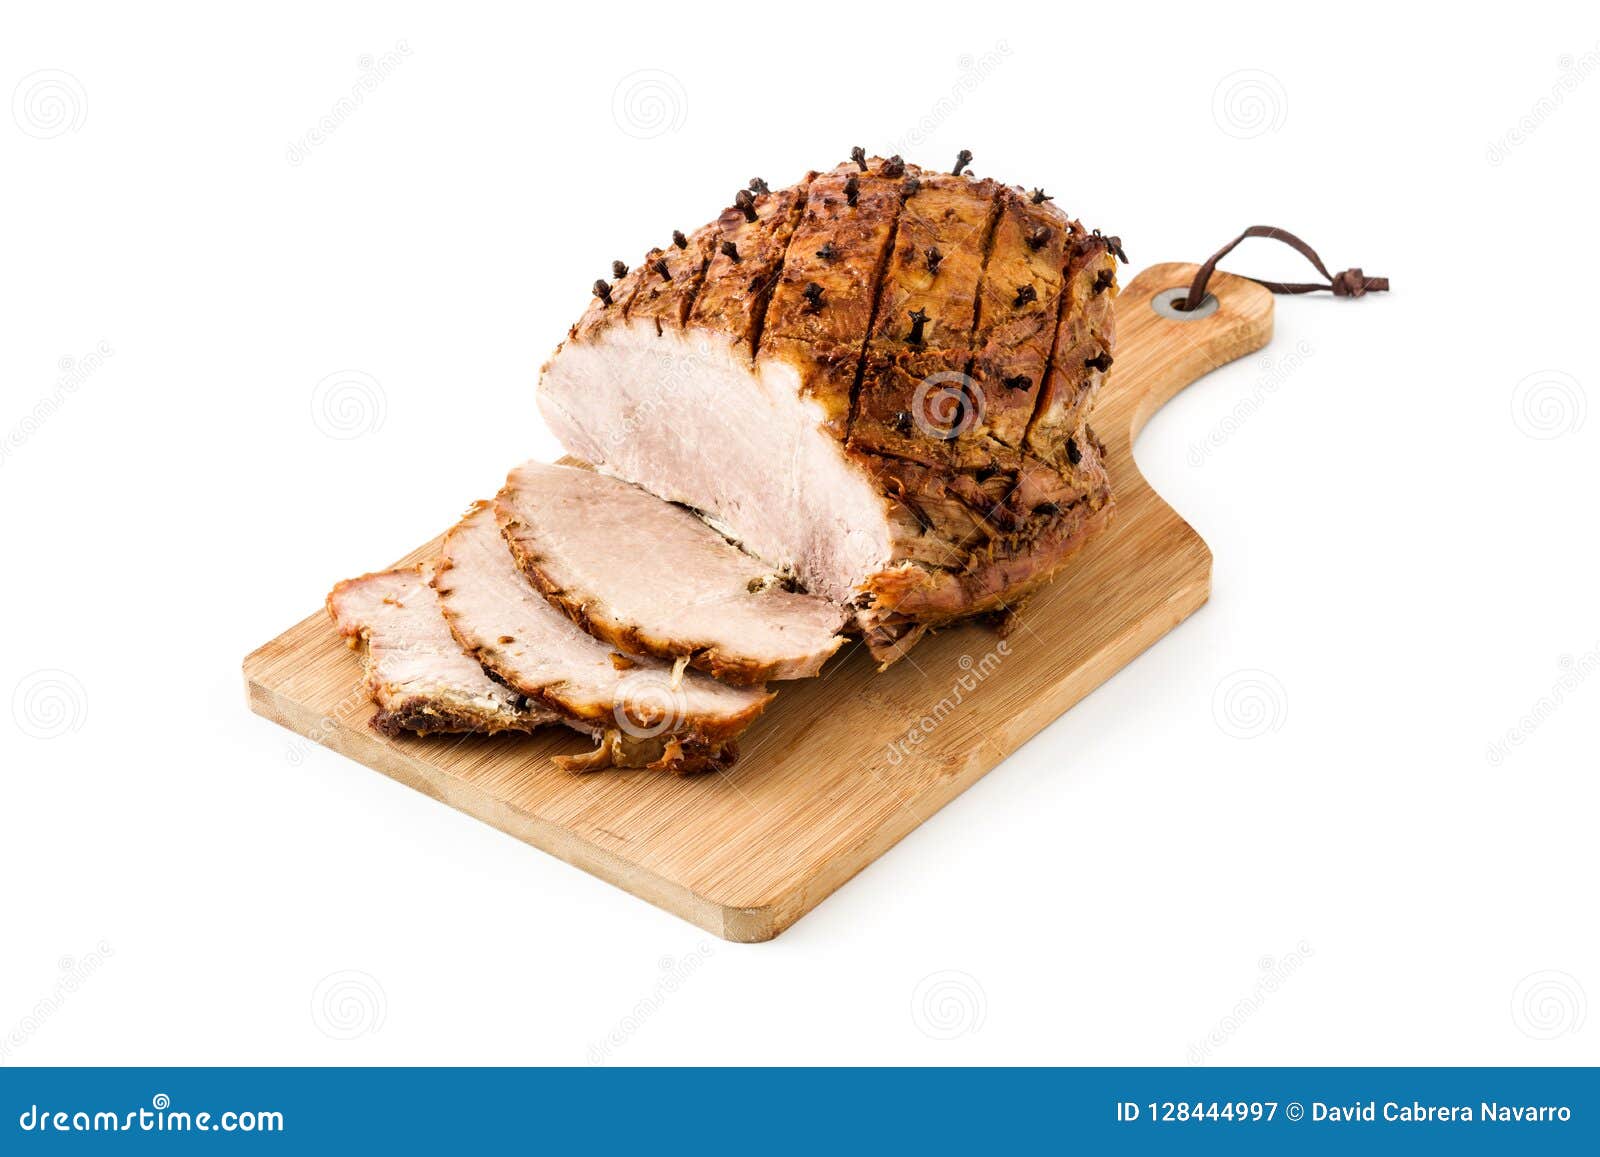 tradicional homemade honey glazed ham for holidays 